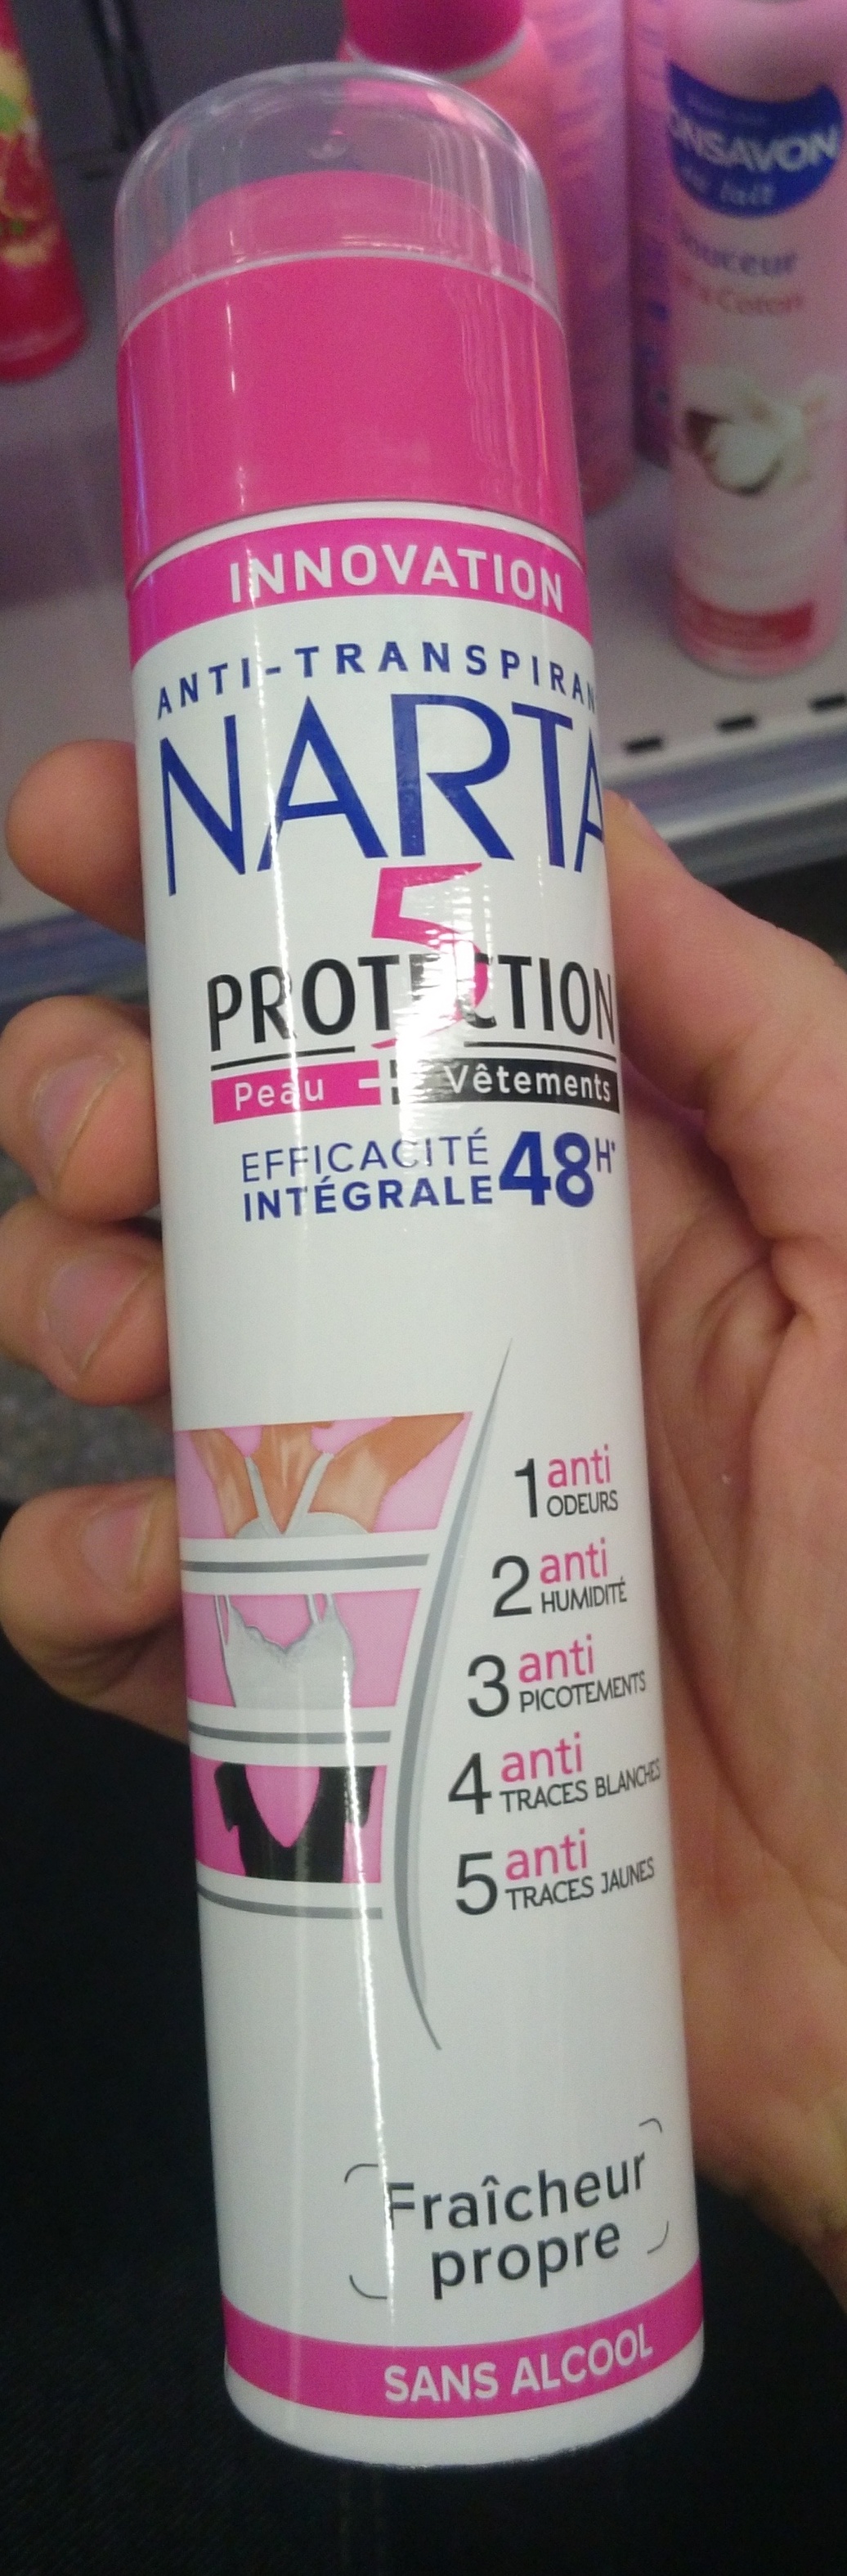 5 protections efficacité intégrale 48h - Продукт - fr